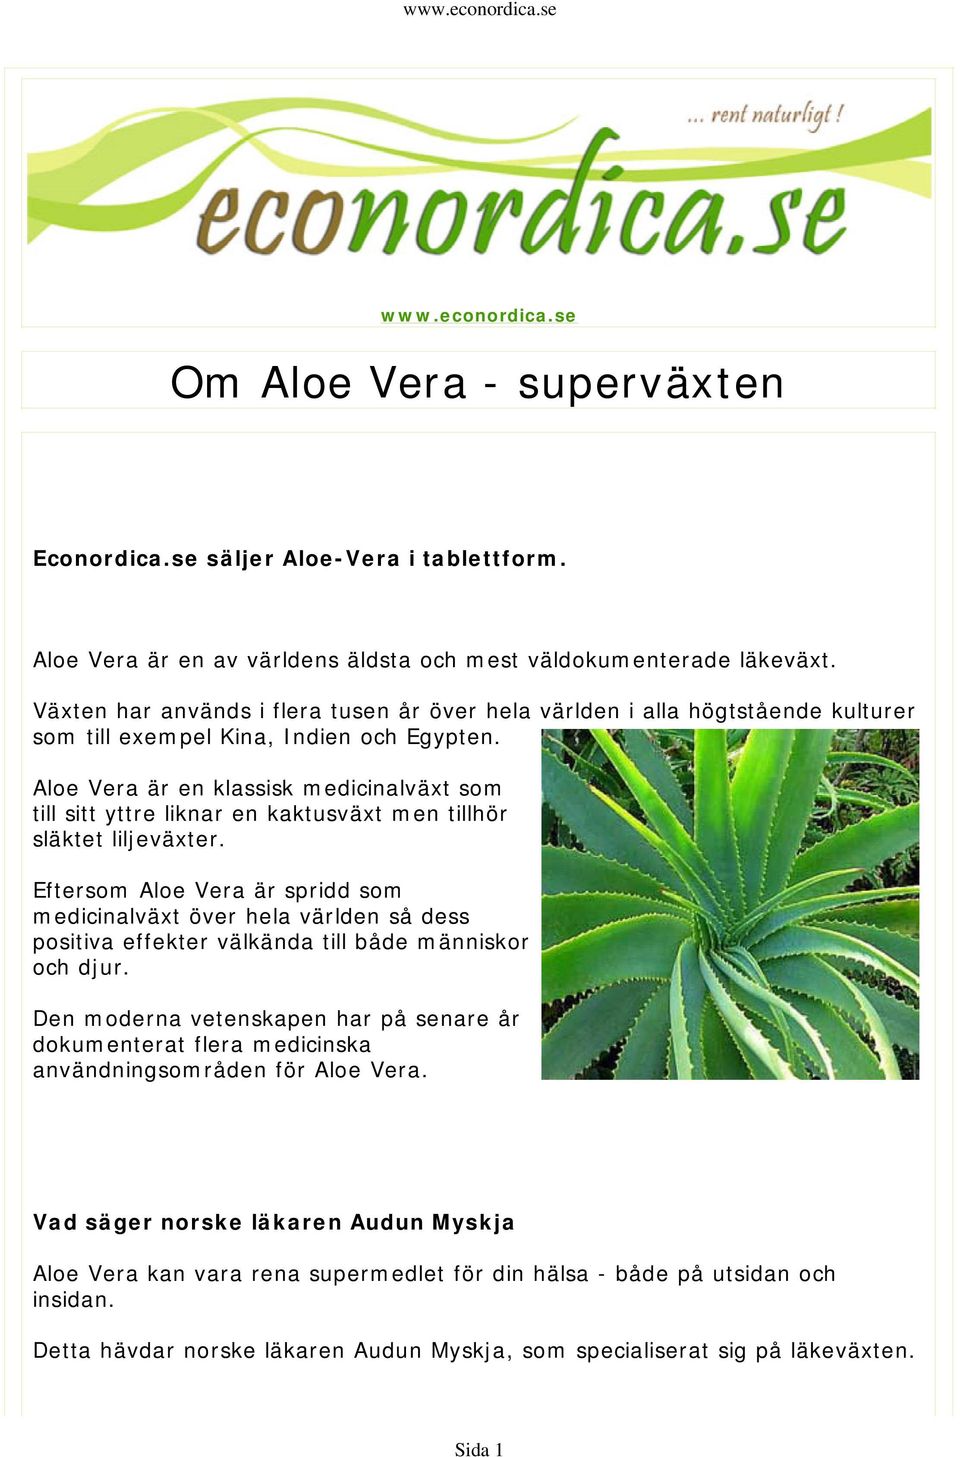 Aloe Vera är en klassisk medicinalväxt som till sitt yttre liknar en kaktusväxt men tillhör släktet liljeväxter.